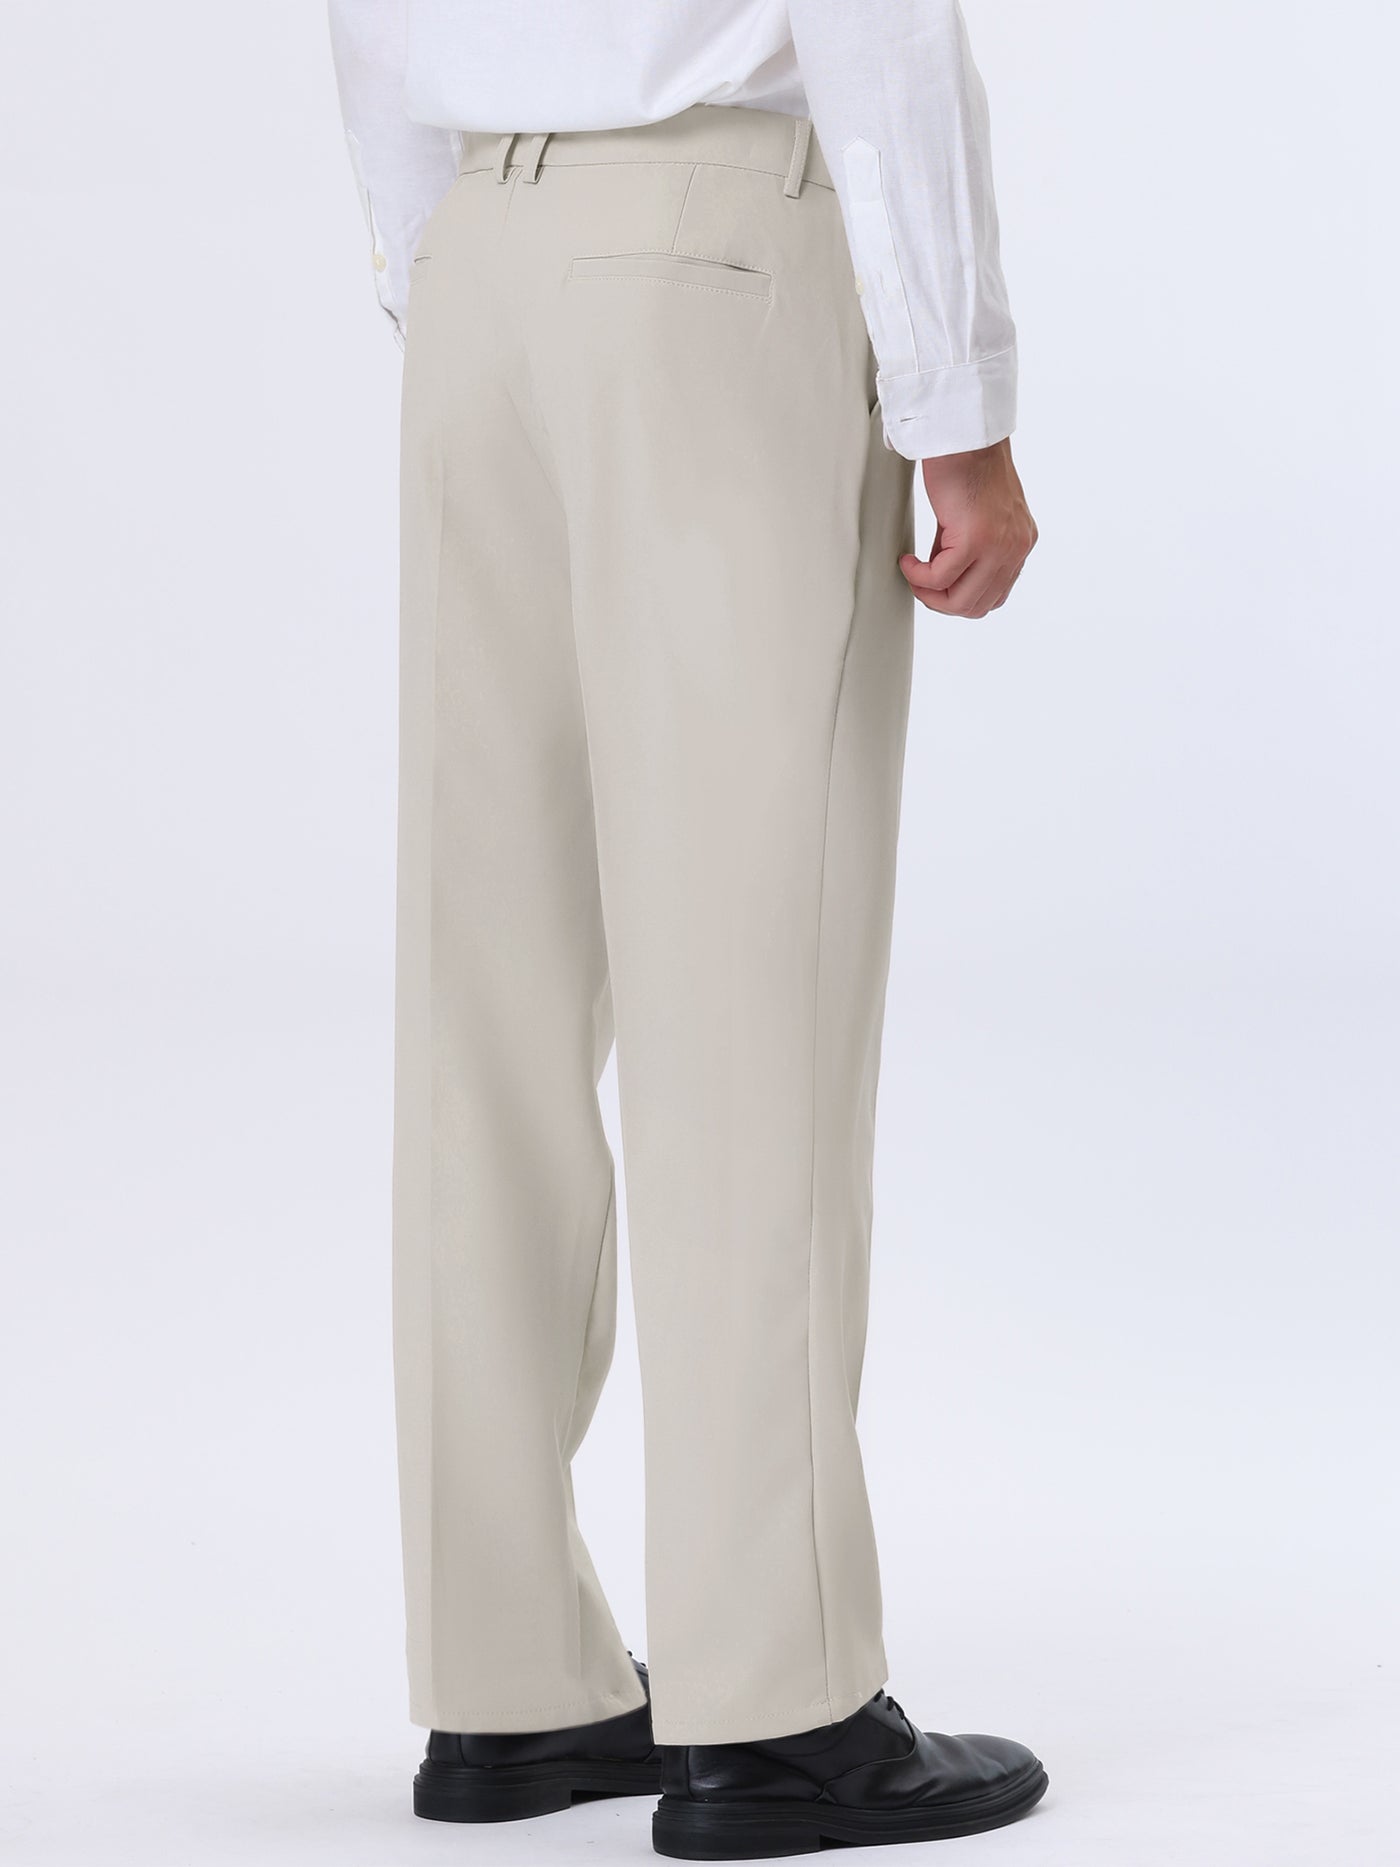 Bublédon Men's Pleat Front Pants Comfort Straight Leg Dress Trousers